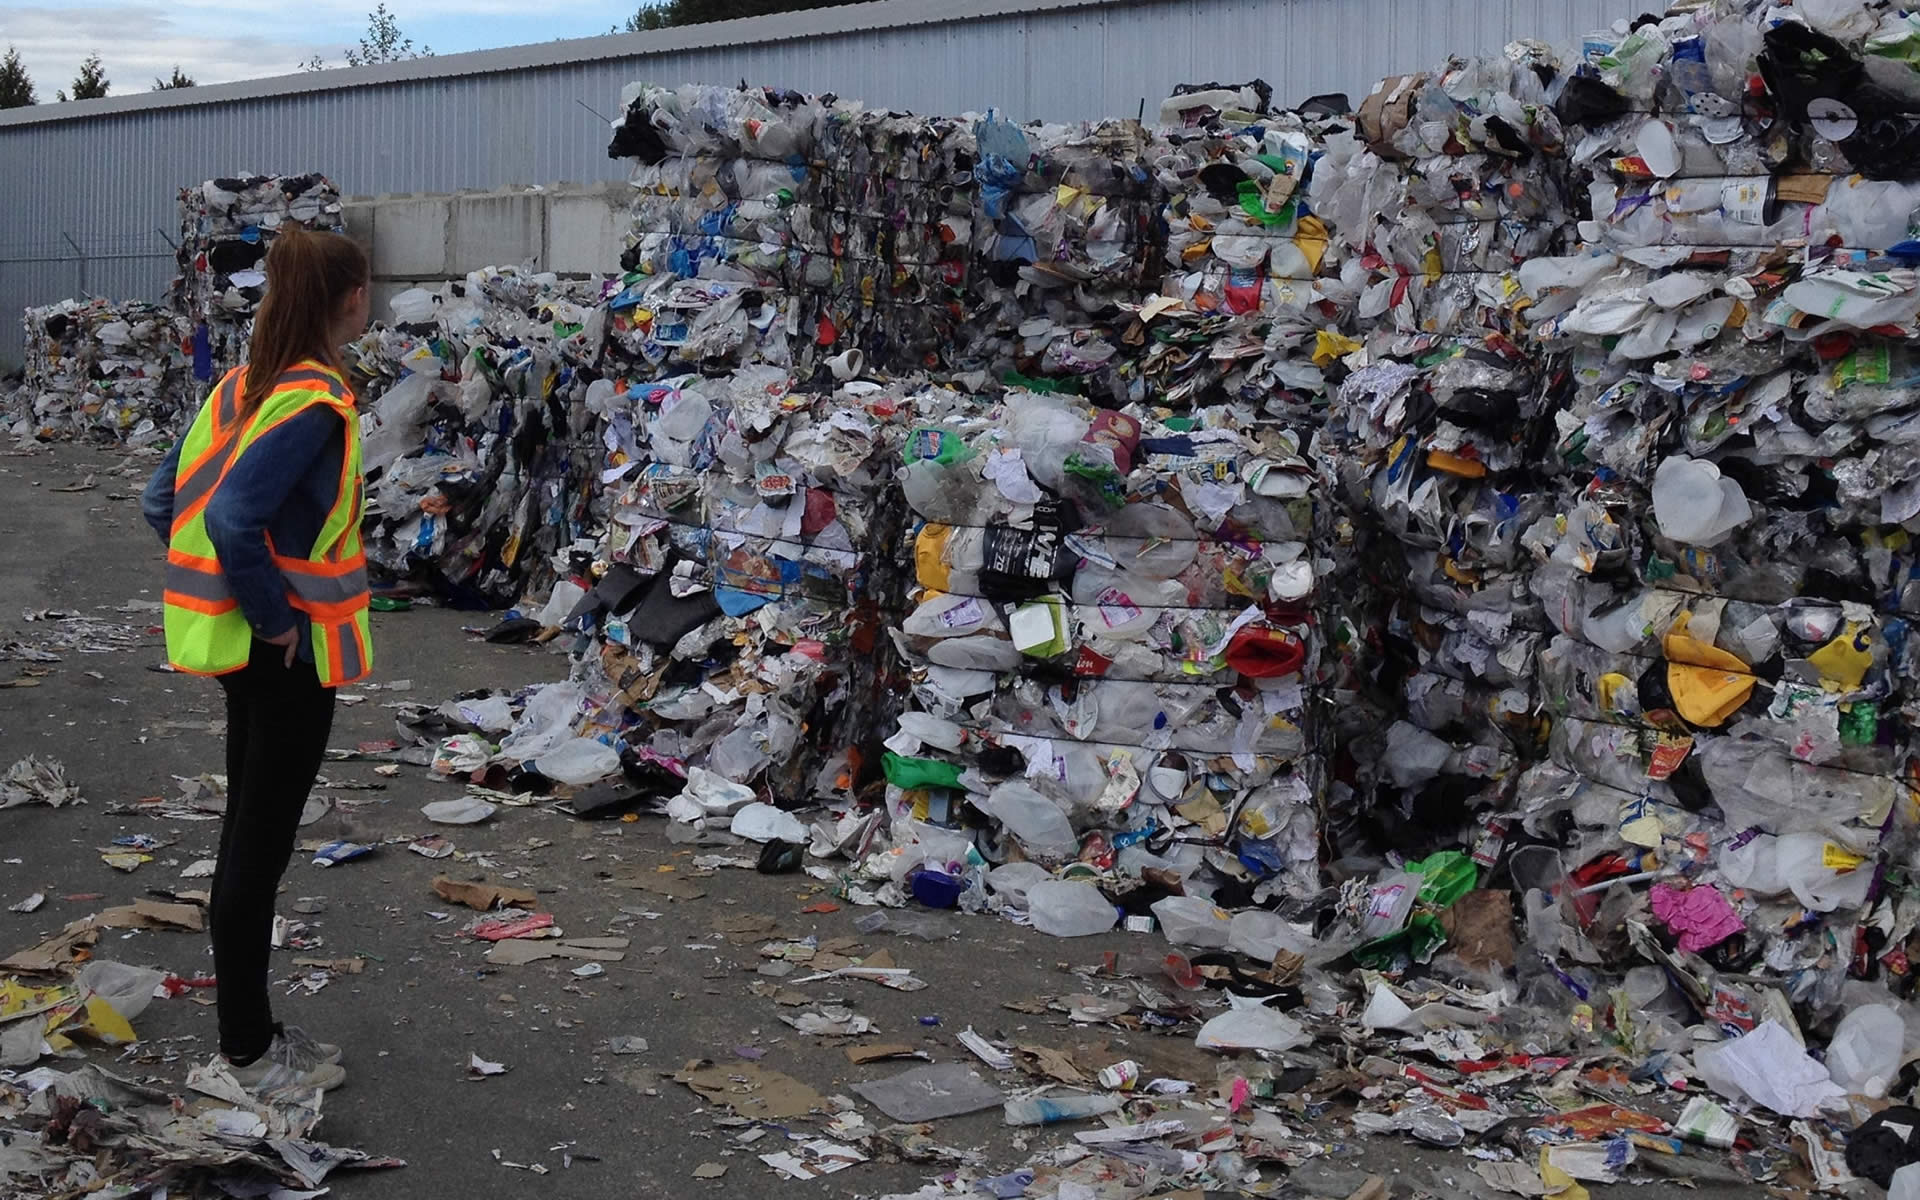 Gestione dei rifiuti? L’EcoForum traccia la strada: meno discariche, più impianti